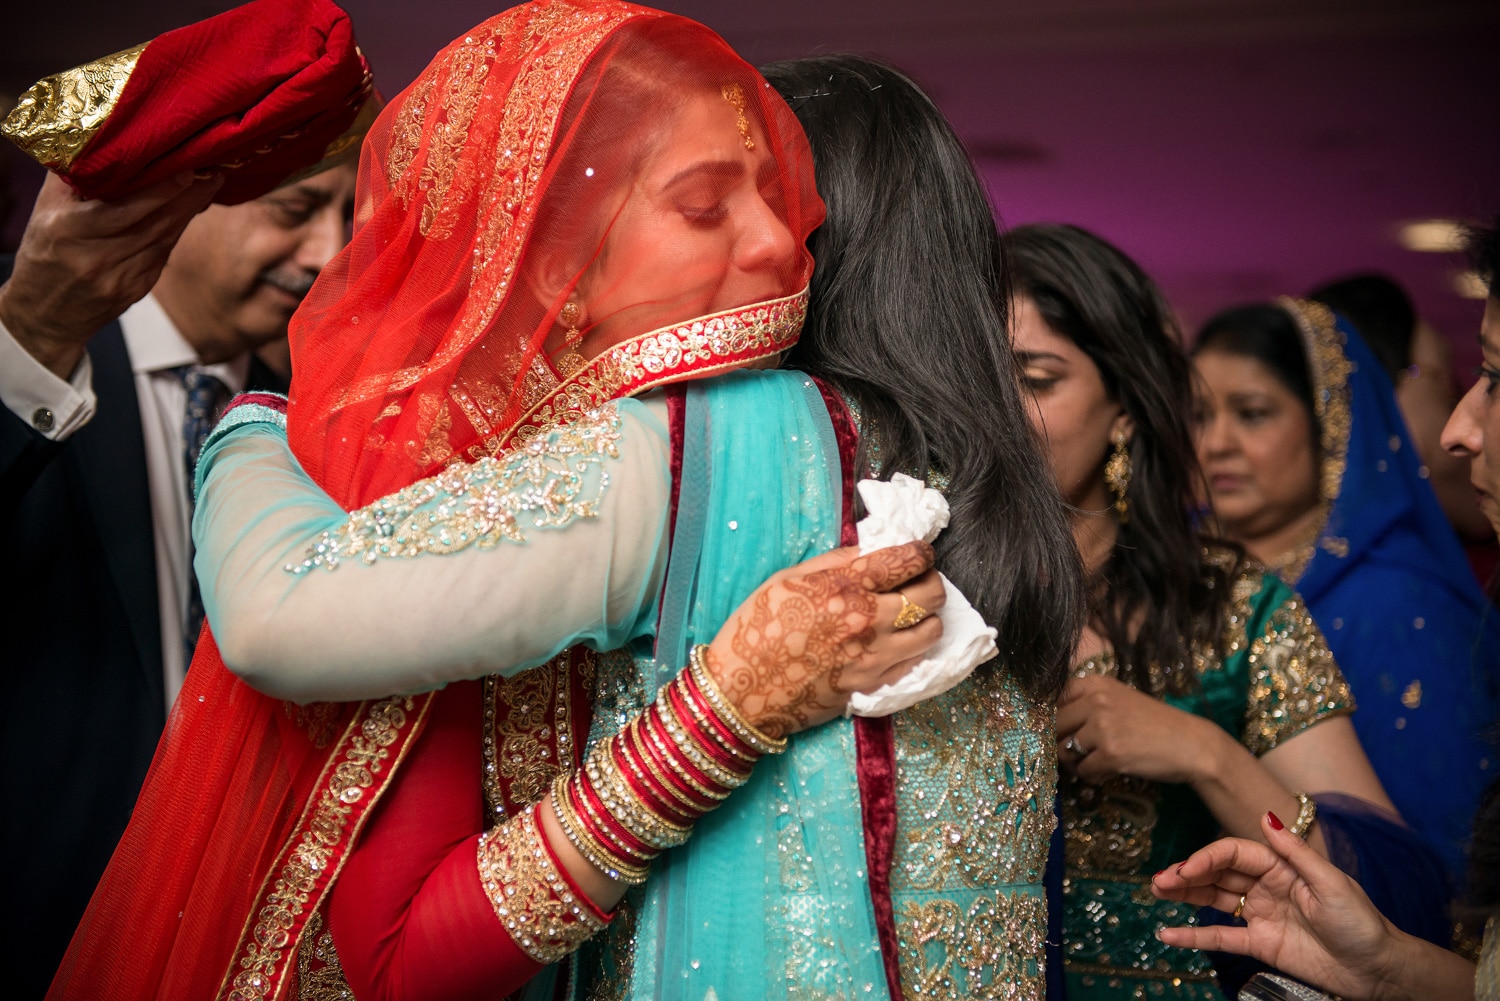 traditional muslim wedding send off